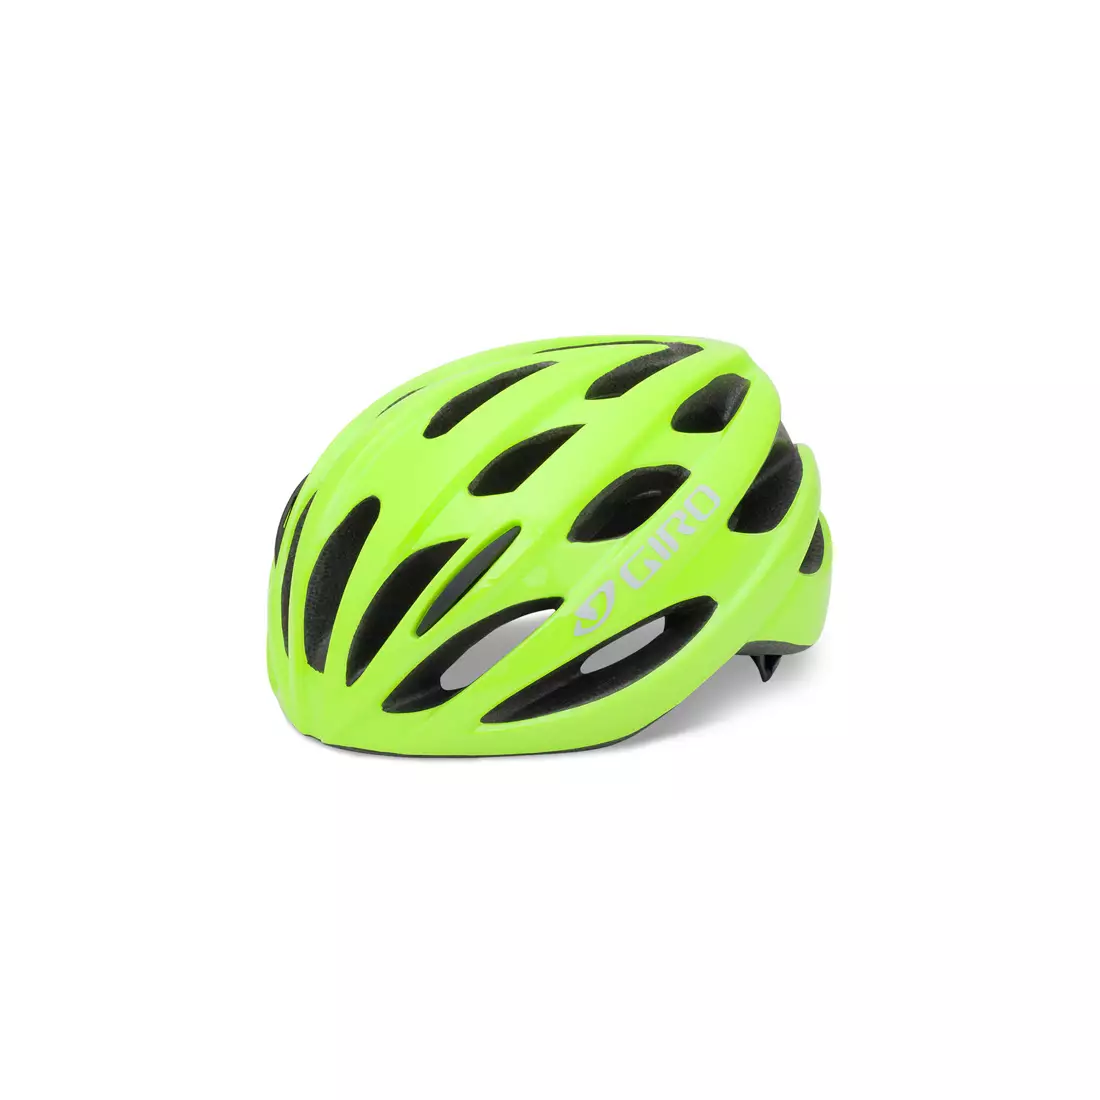 Casca de bicicleta GIRO TRINITY, fluorescenta